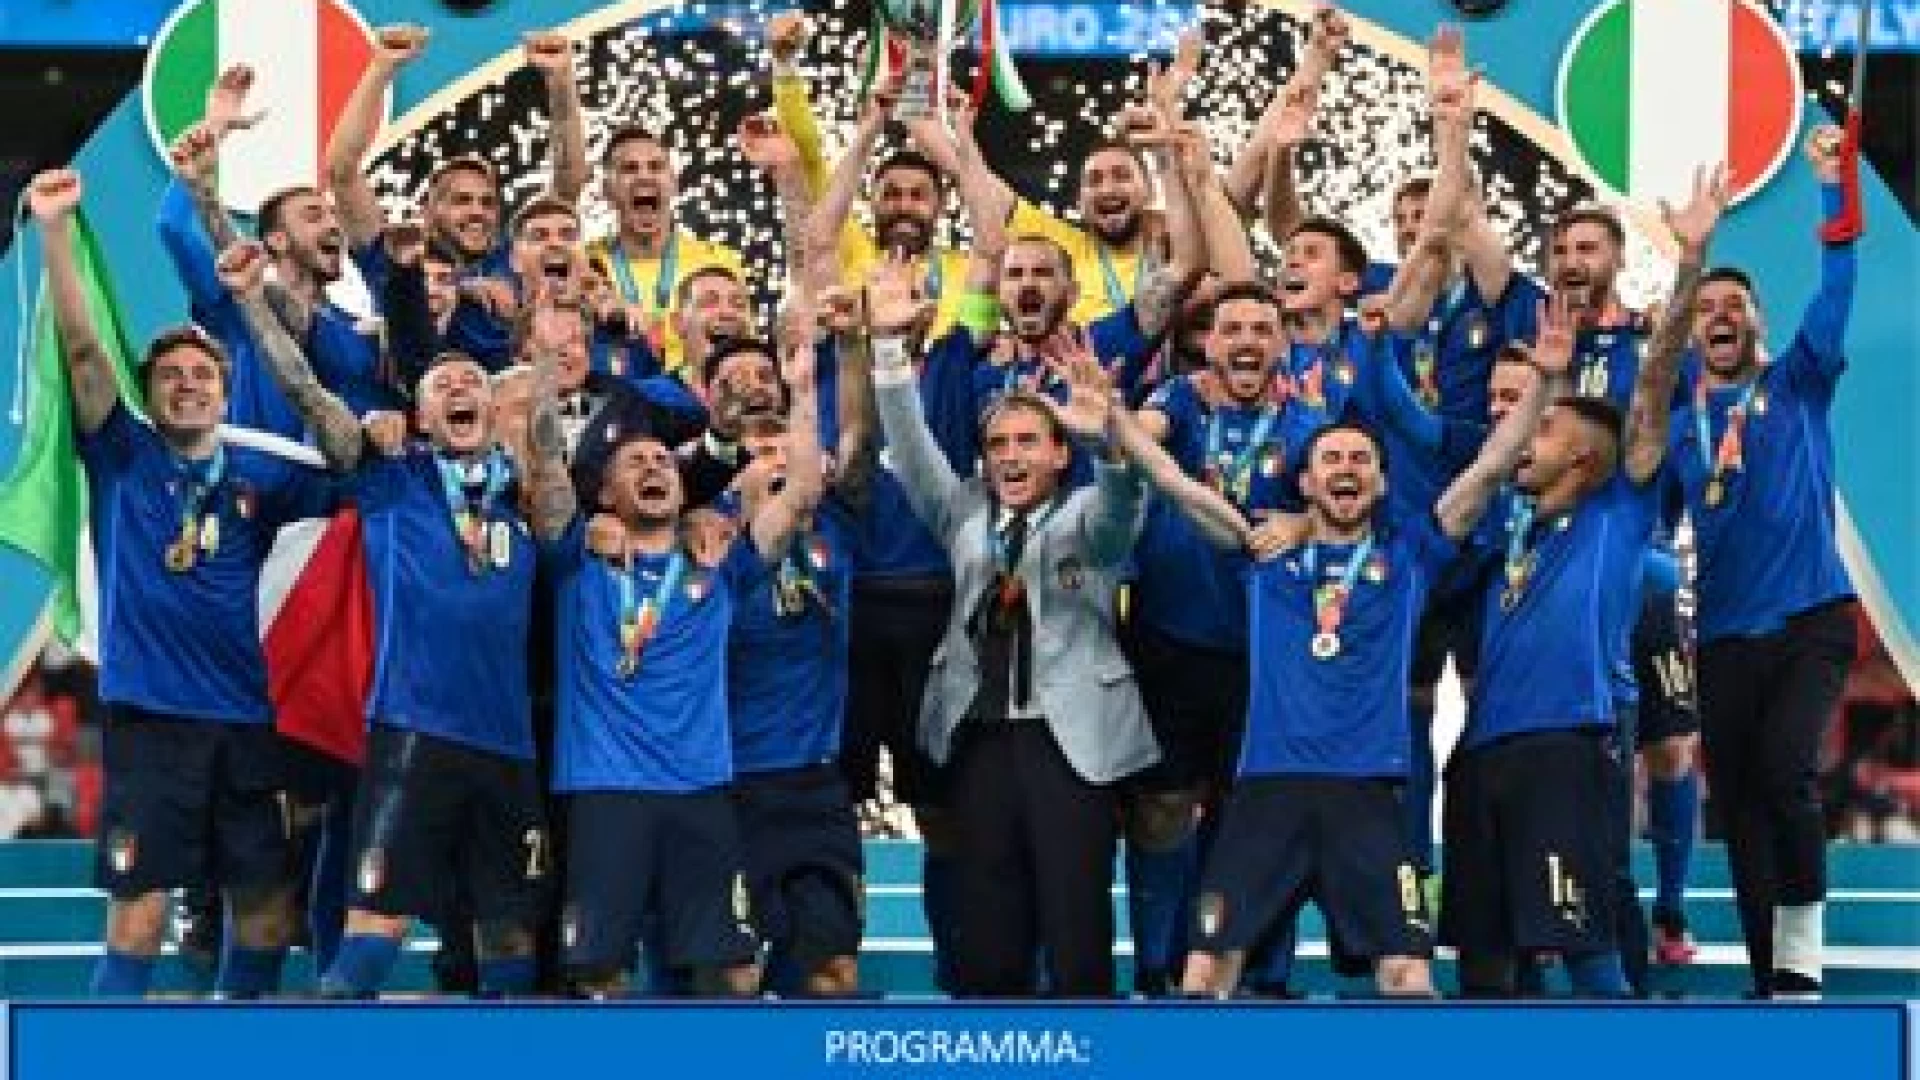 La Coppa d'Europa in Molise il 5 novembre a Campobasso accompagnata dal presidente Gravina